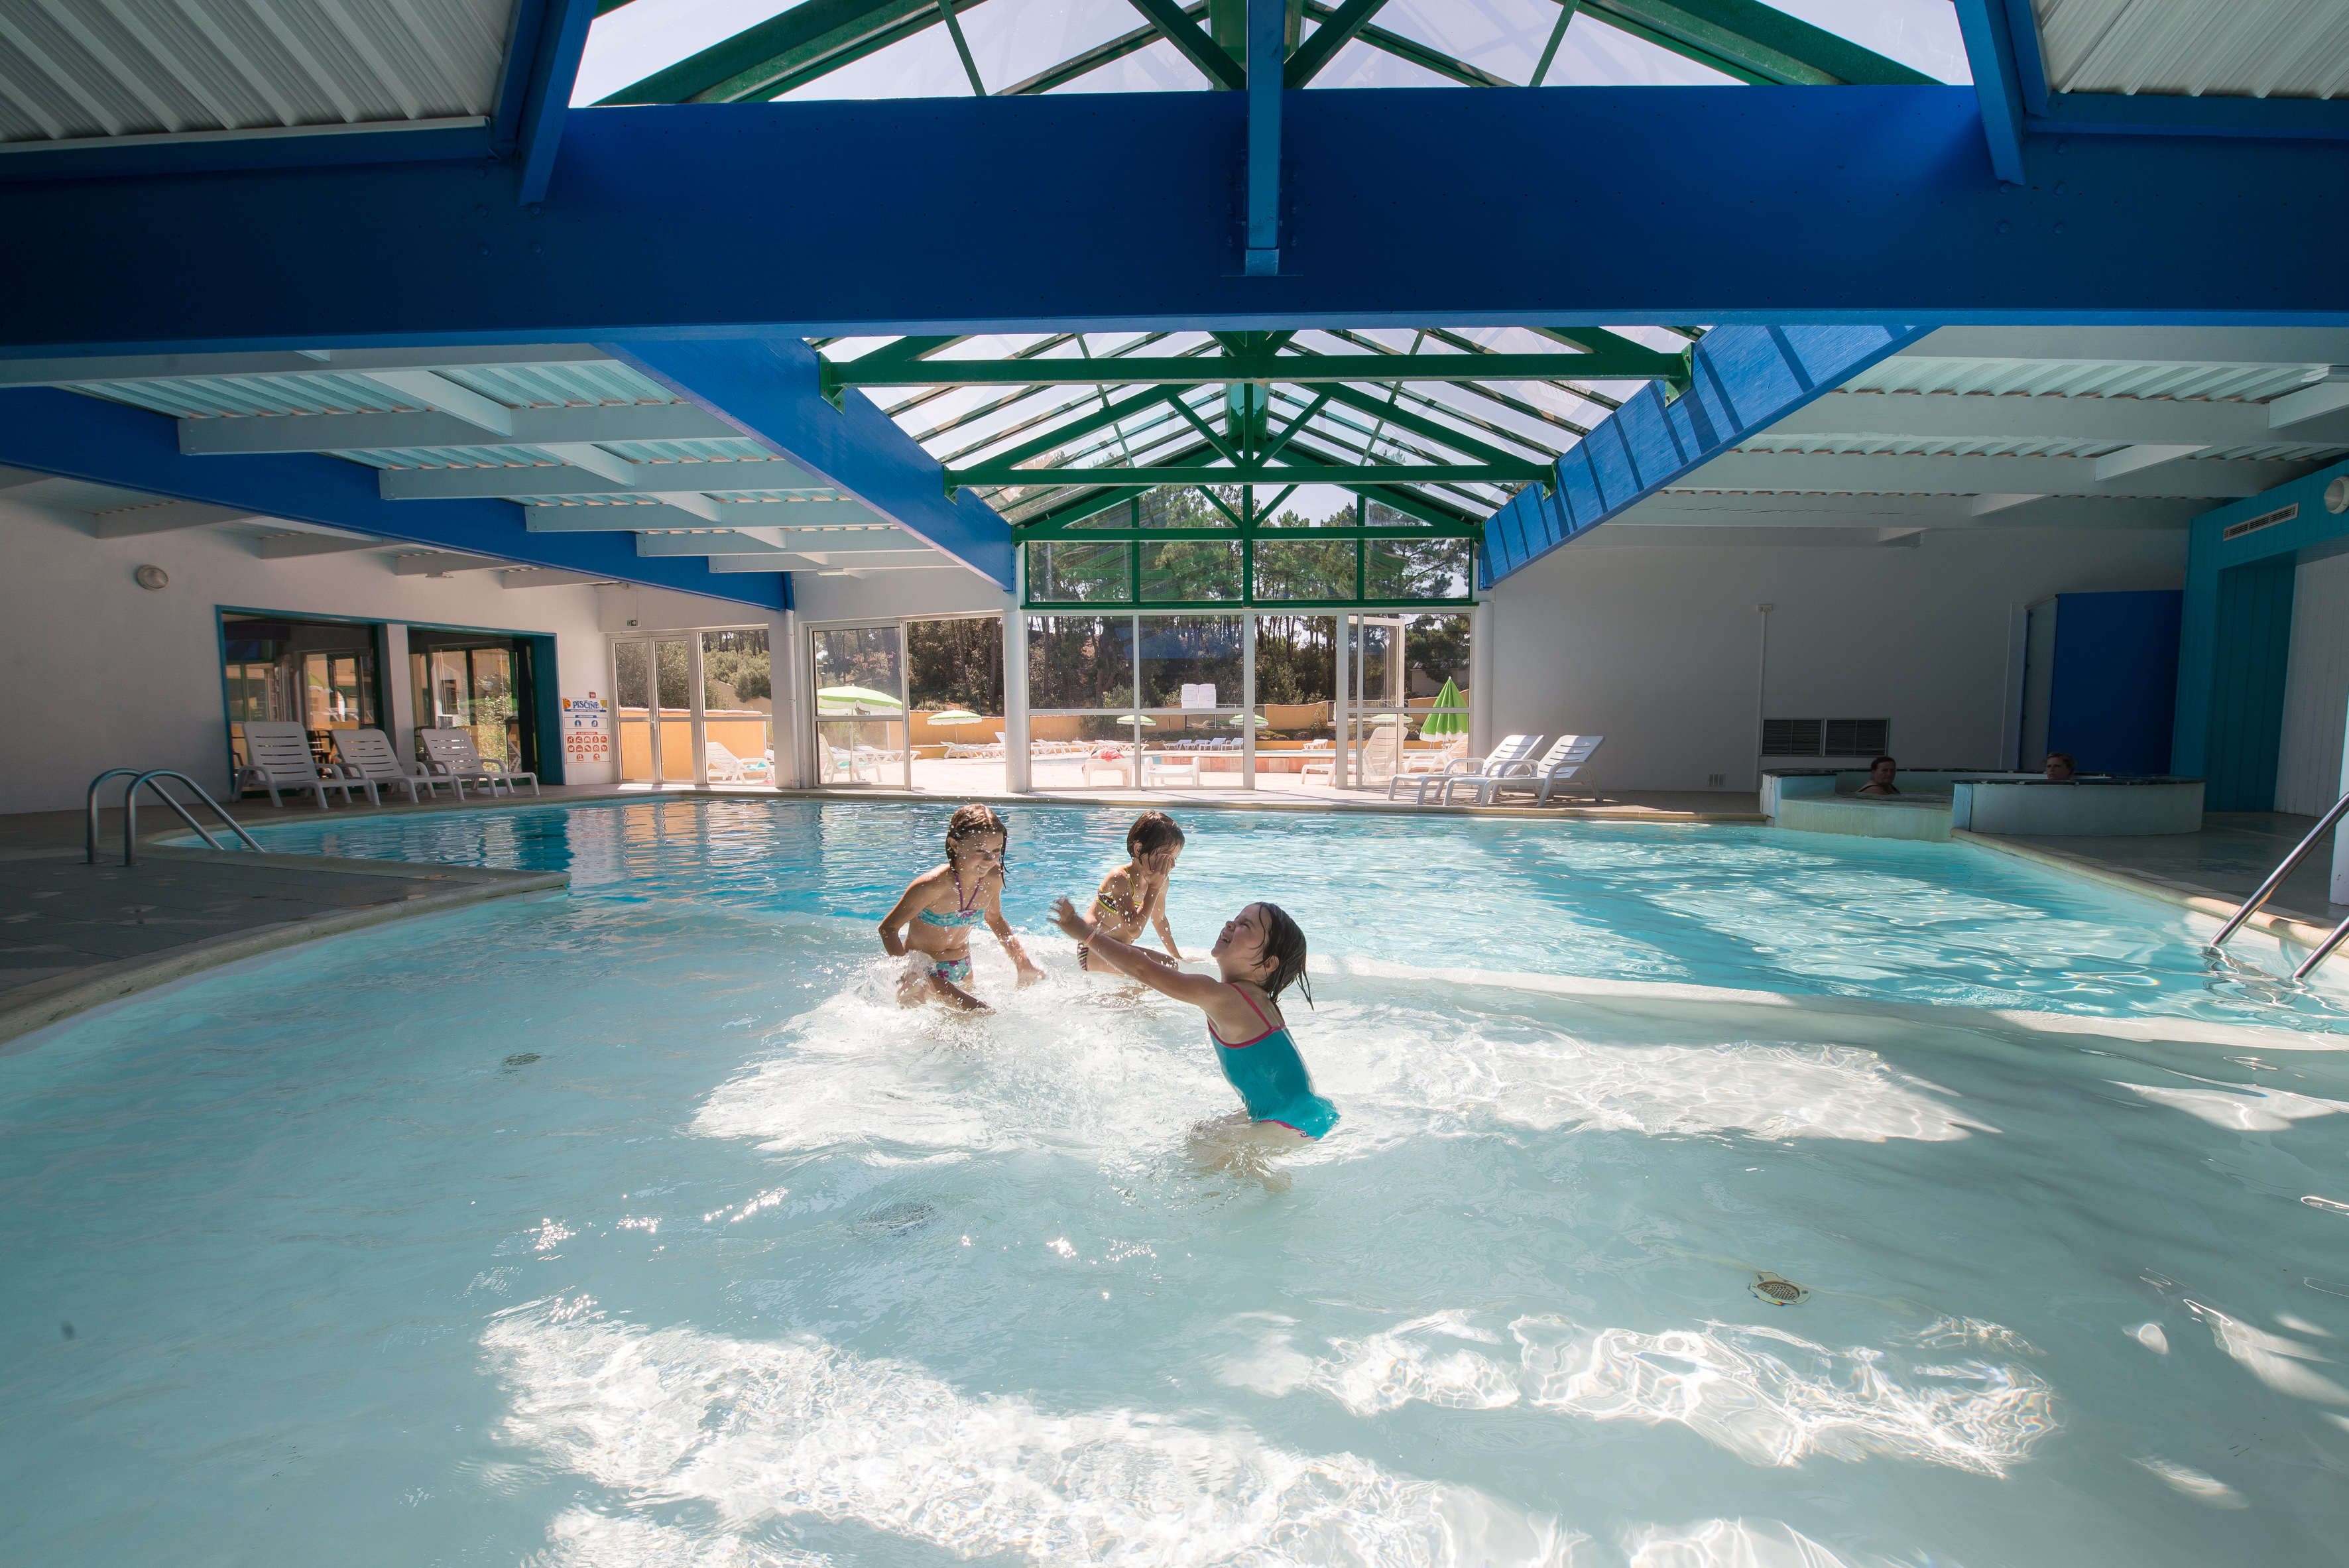 Dans une ambiance familial vous profiterez au Domaine des Pins des joies de la baignade dans cette magnifique piscine couverte